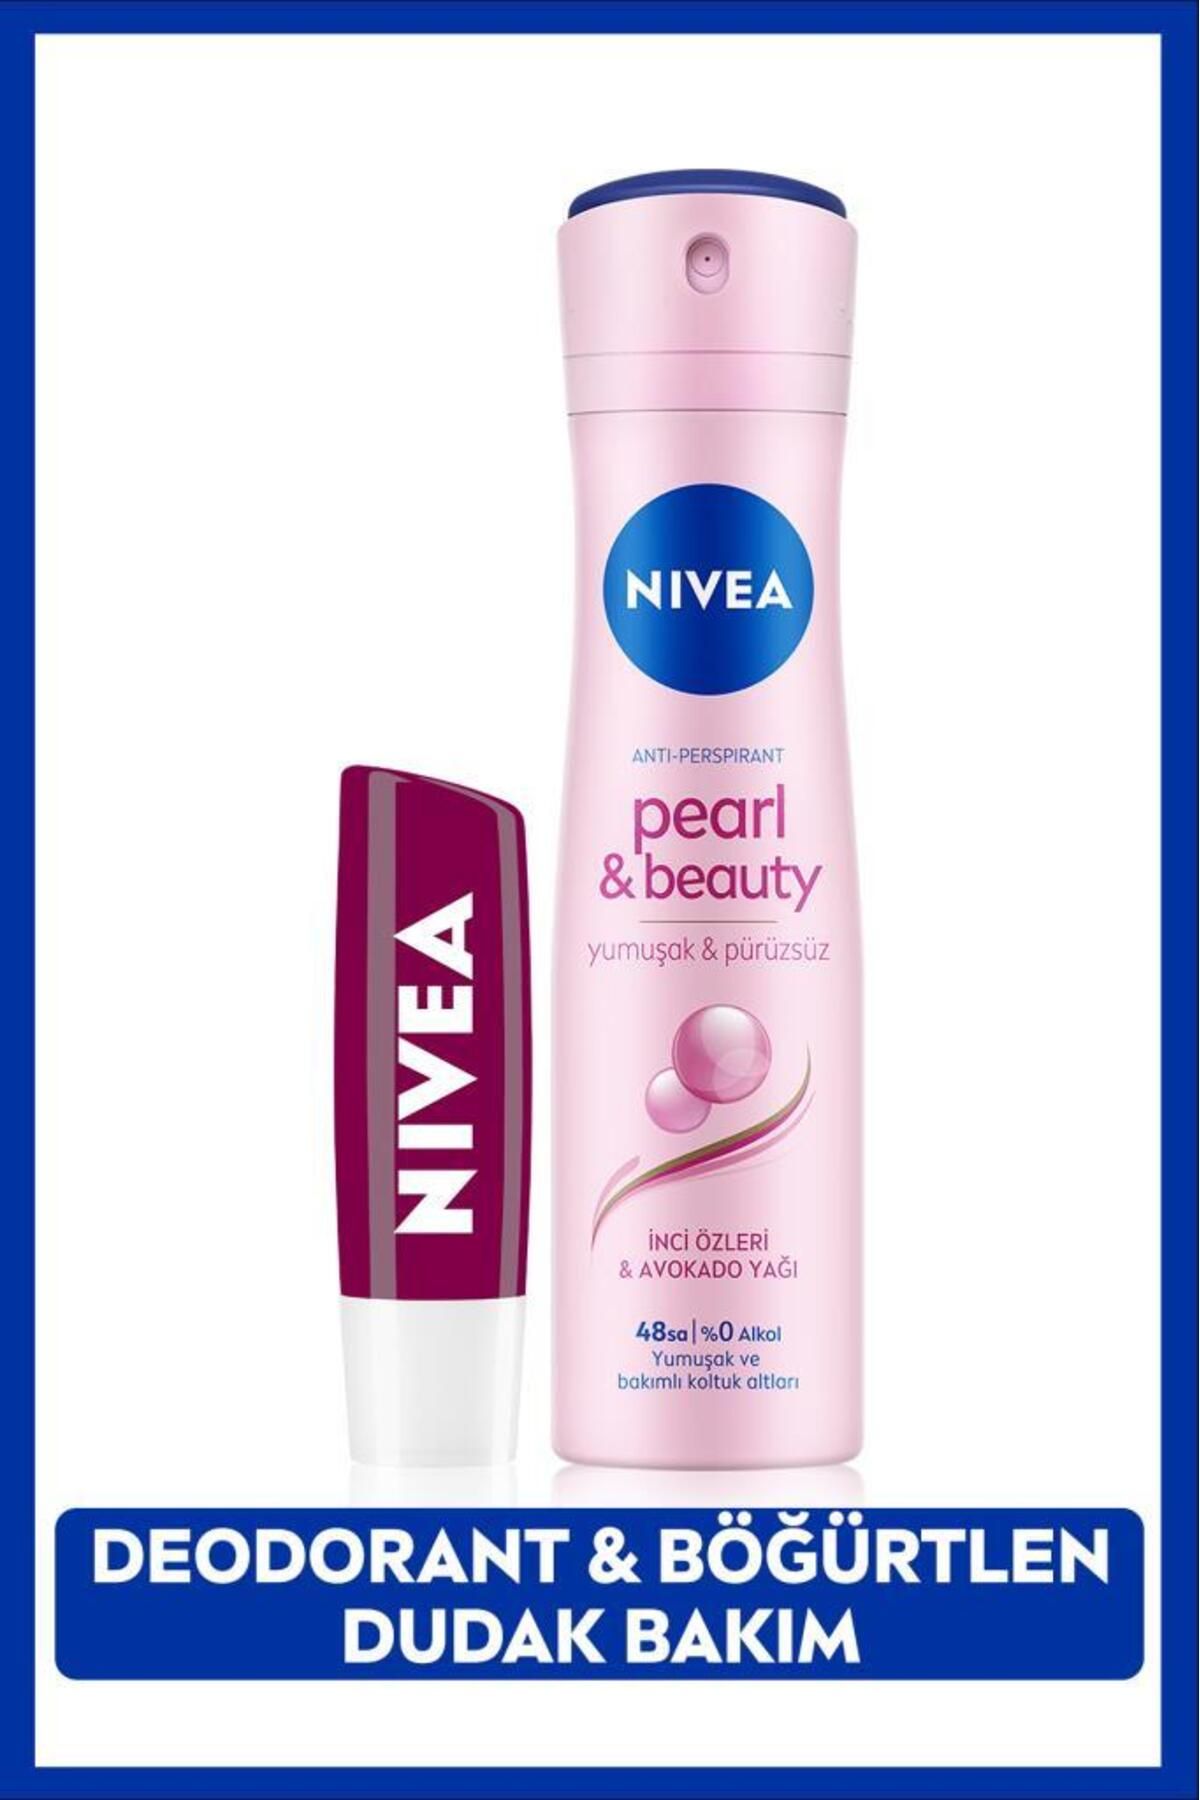 NIVEA Kadın Sprey Deodorant Pearl&Beauty 150ml, 48 Saat Koruma ve Nemlendirici Böğürtlen Dudak Bakım Kremi